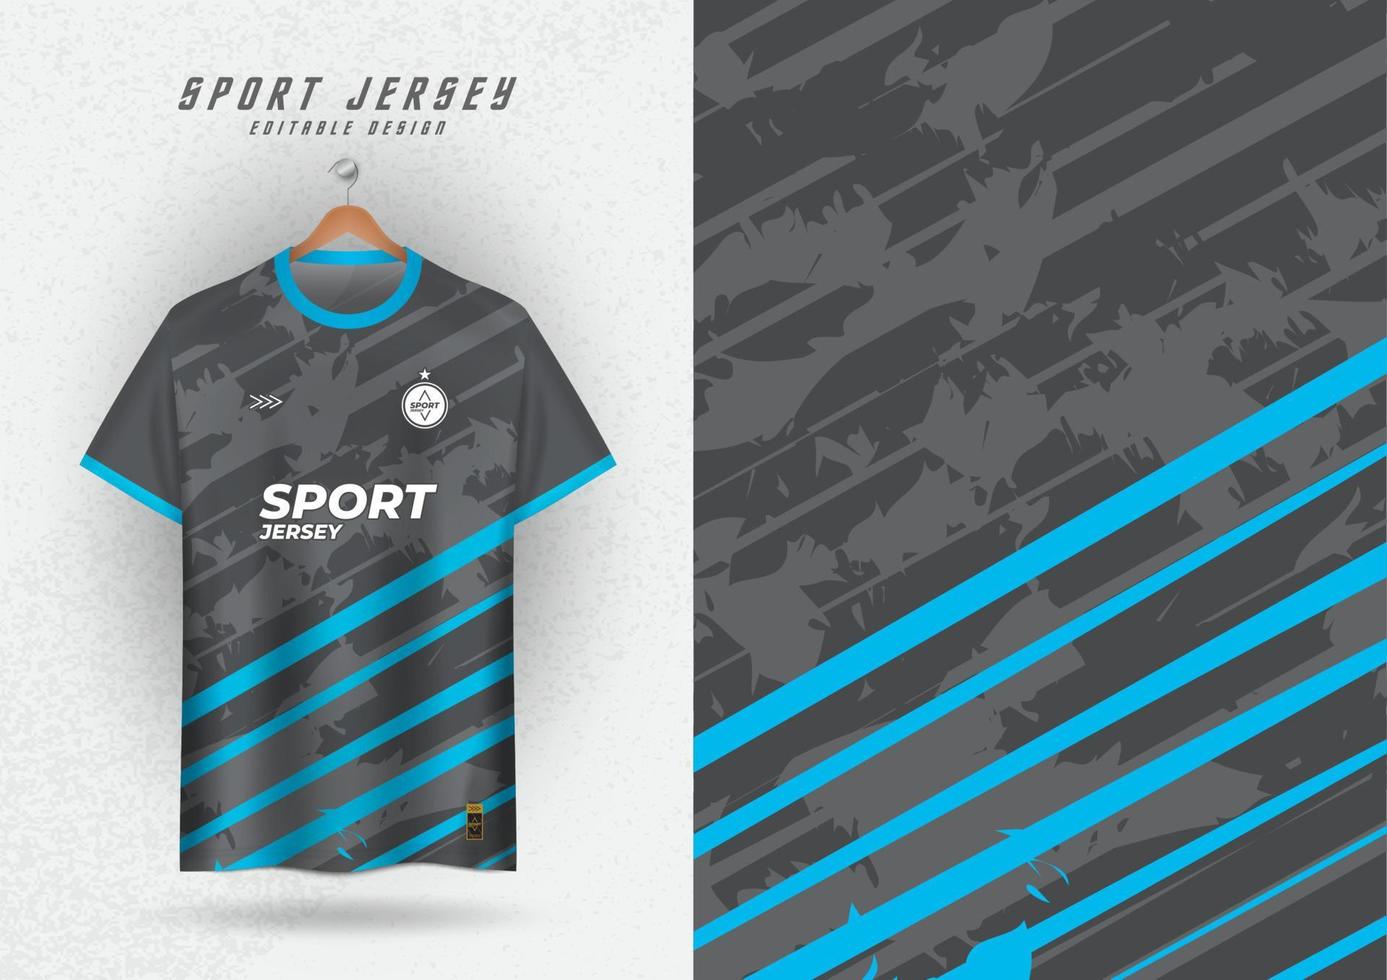 achtergrond bespotten omhoog voor sport- Jersey voetbal rennen racen, grijs en blauw patroon. vector